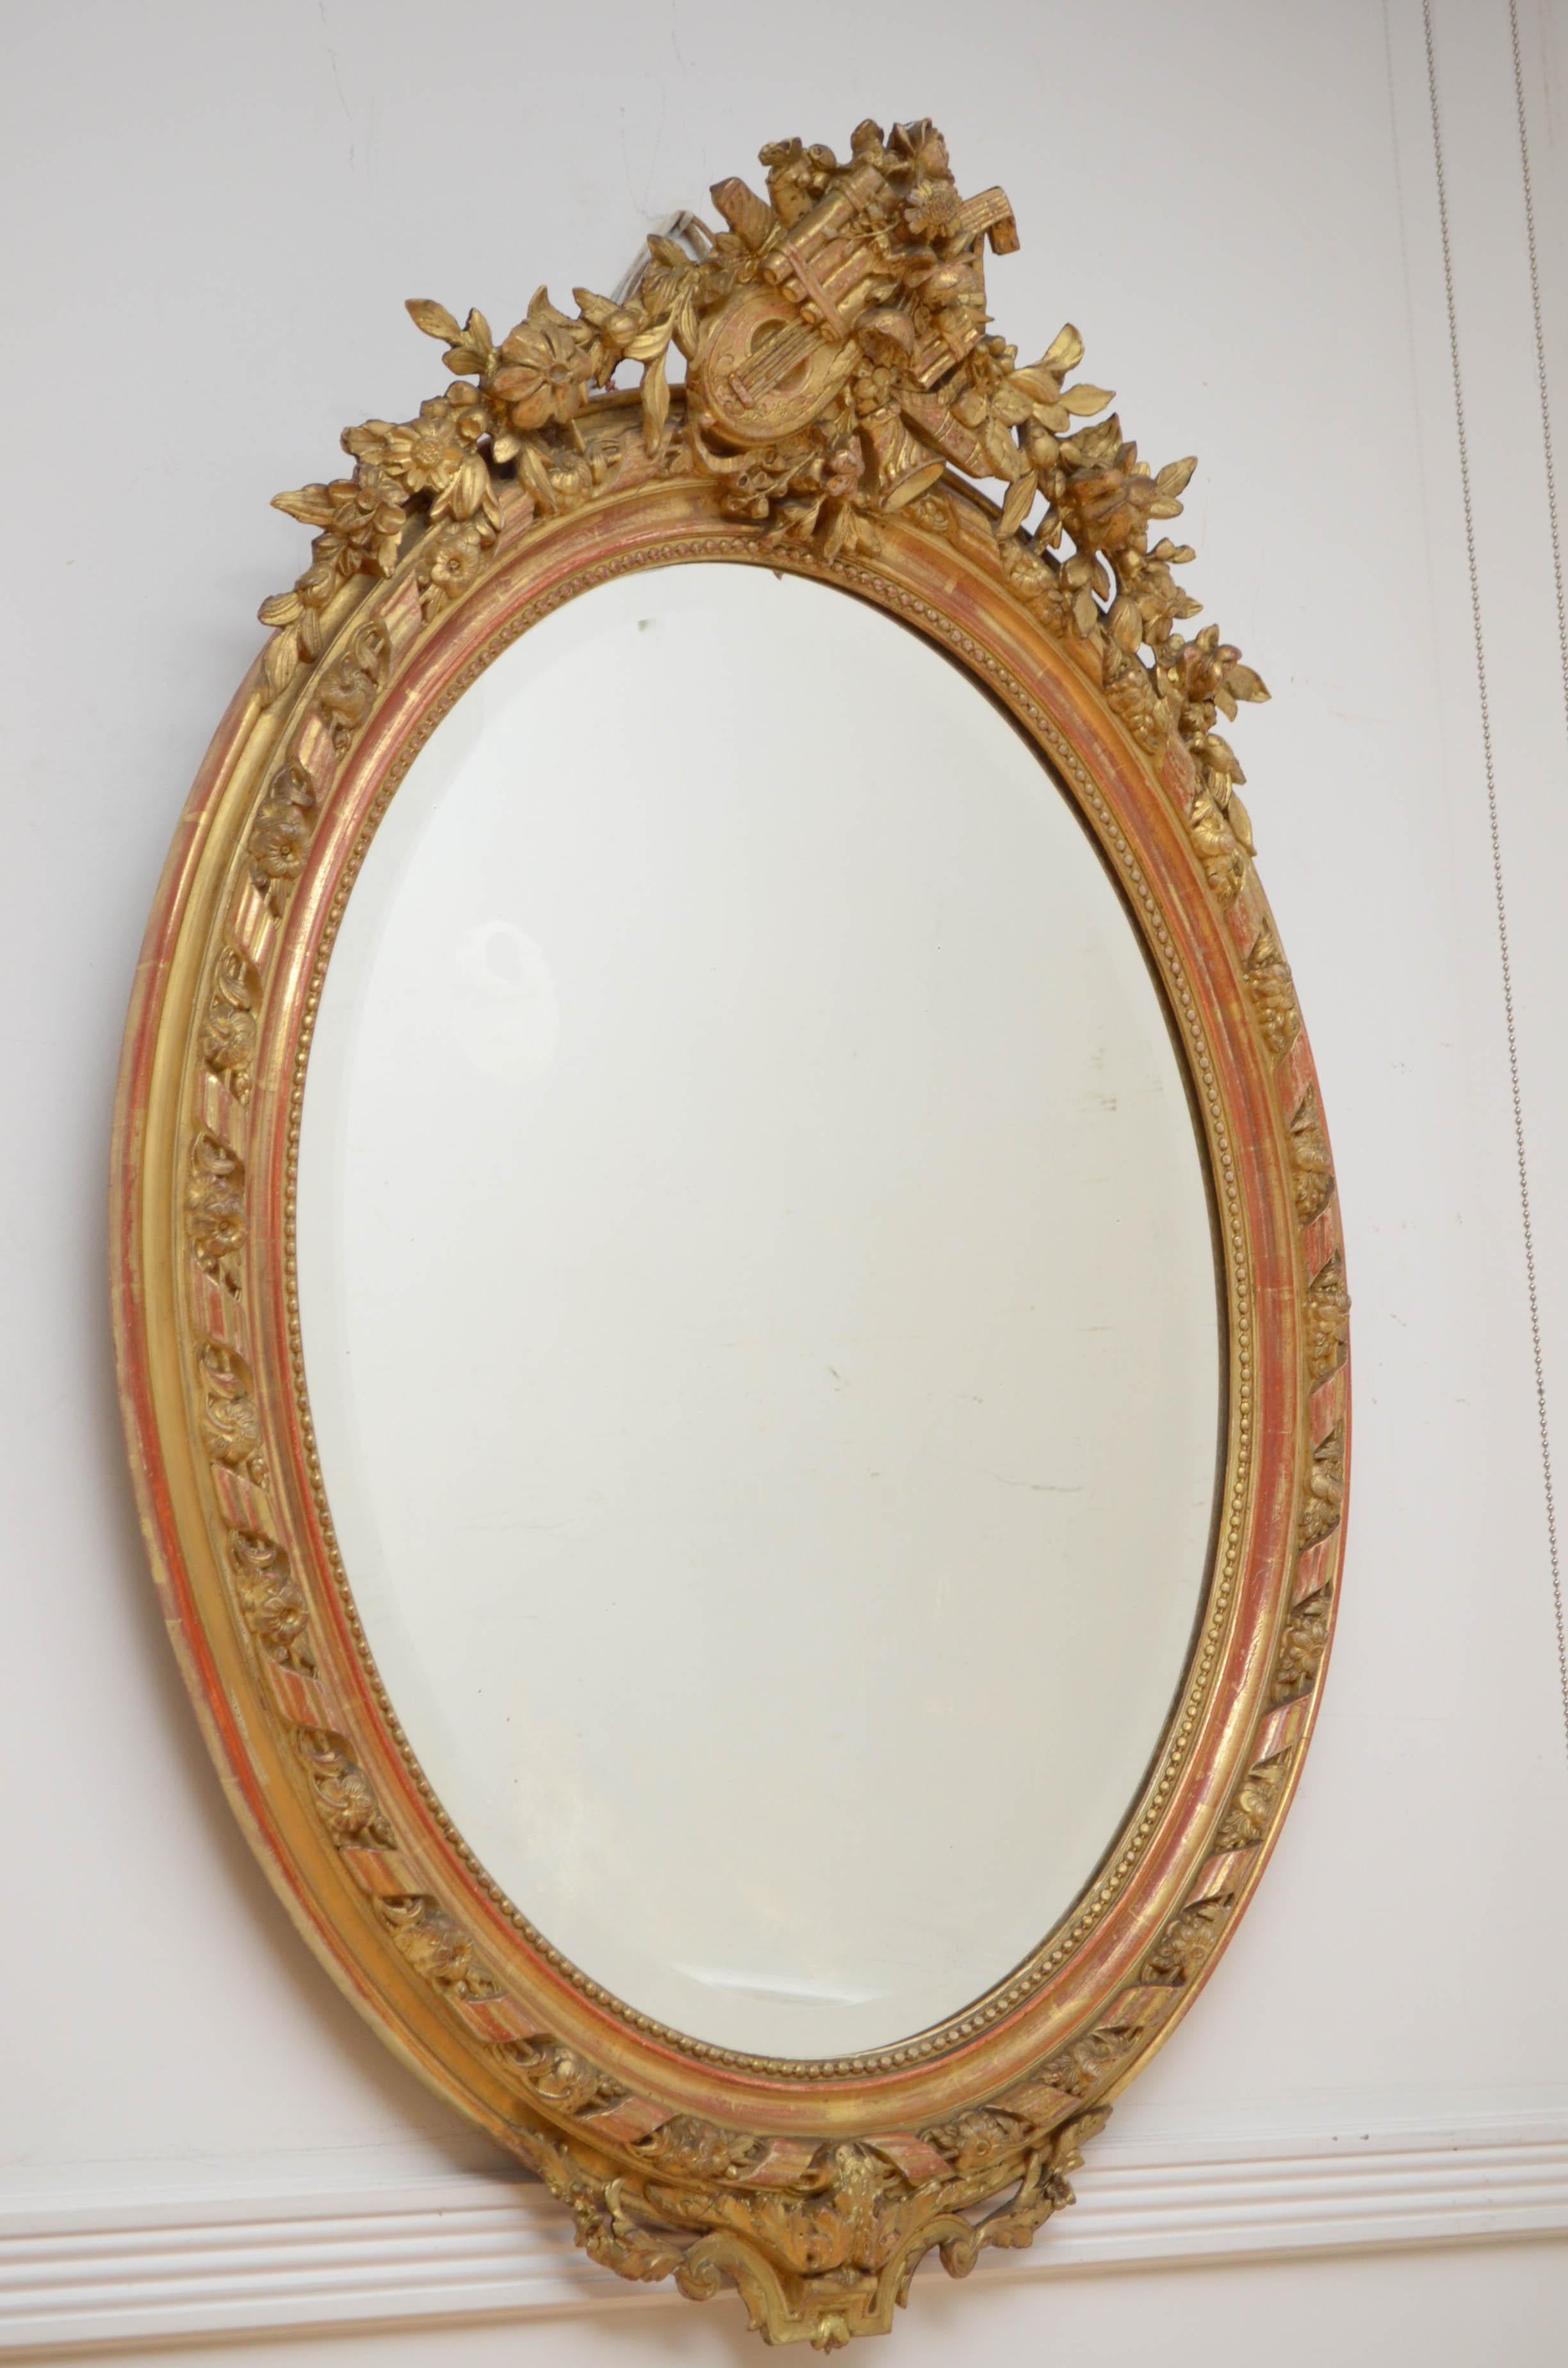 0218 Feiner handgeschnitzter Spiegel aus dem 19. Jahrhundert im Belle-Epoque-Stil, mit originalem, abgeschrägtem Glas mit einigen Sprenkeln in einem fein geschnitzten Rahmen. Der Rahmen ist mit 